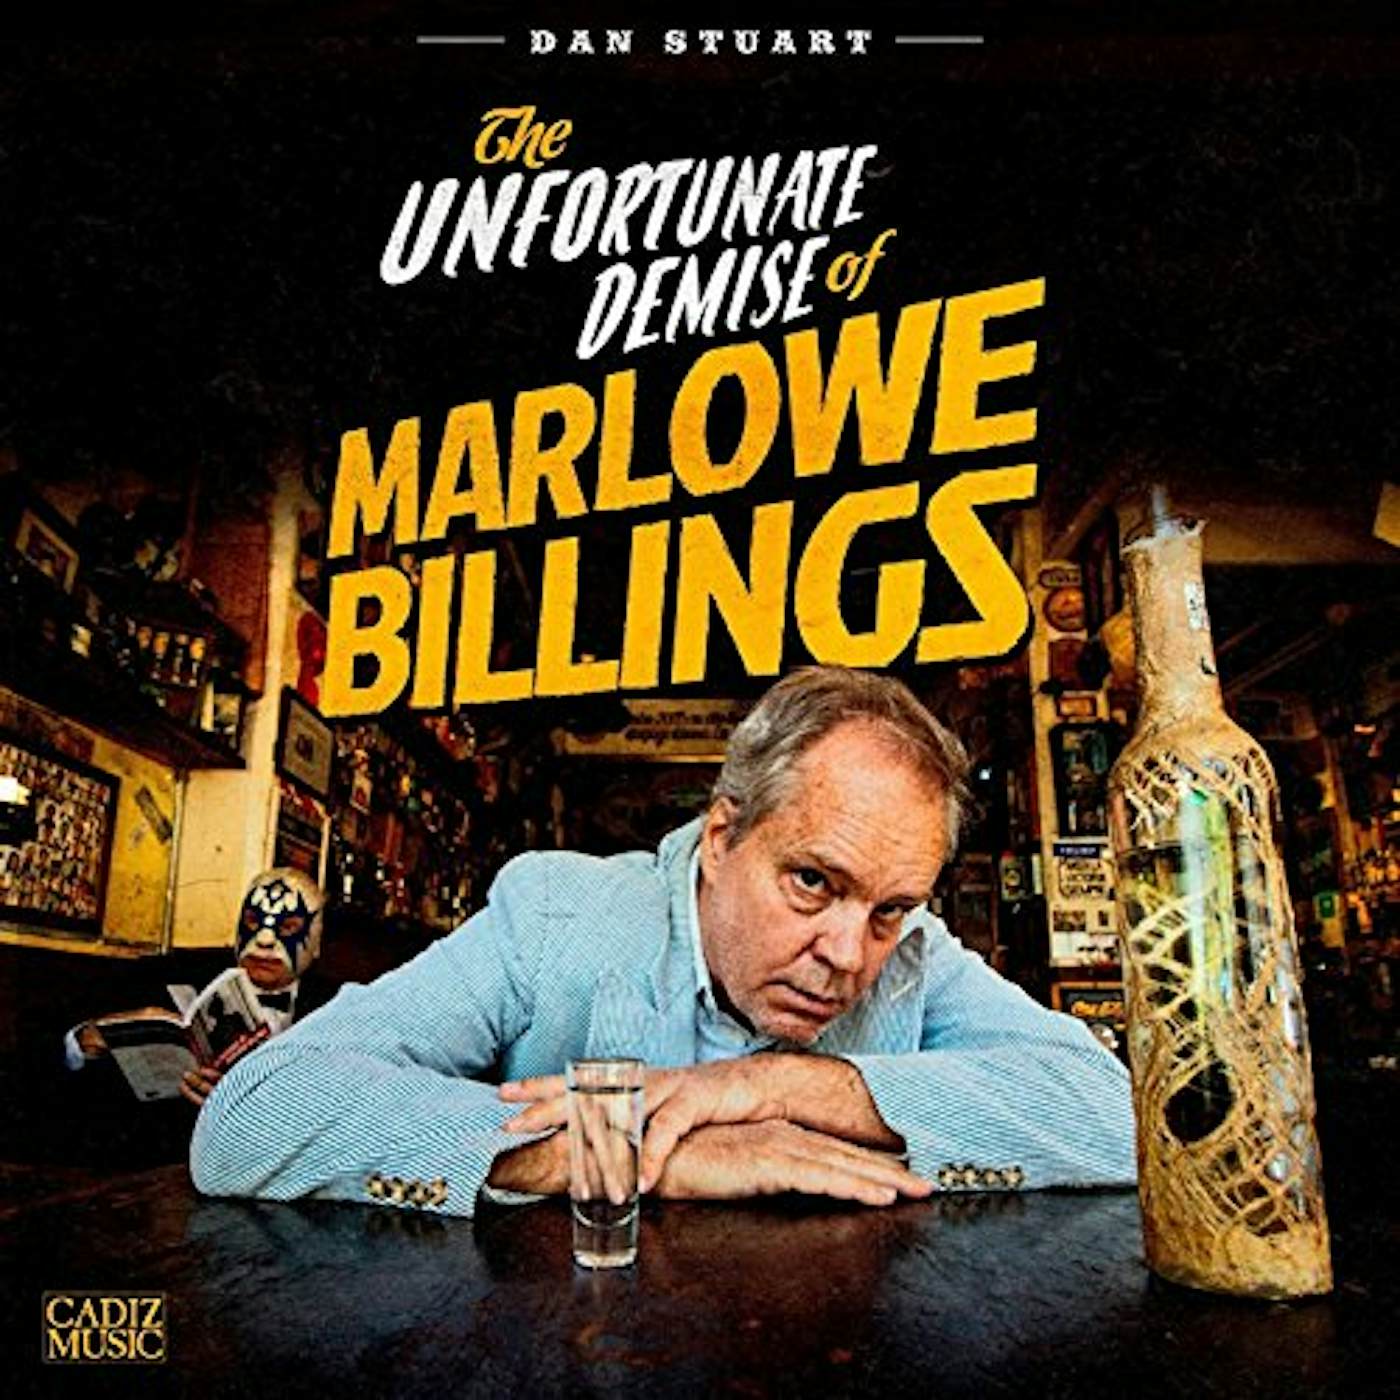 Dan Stuart UNFORTUNATE DEMISE OF MARLOWE BILLINGS Vinyl Record